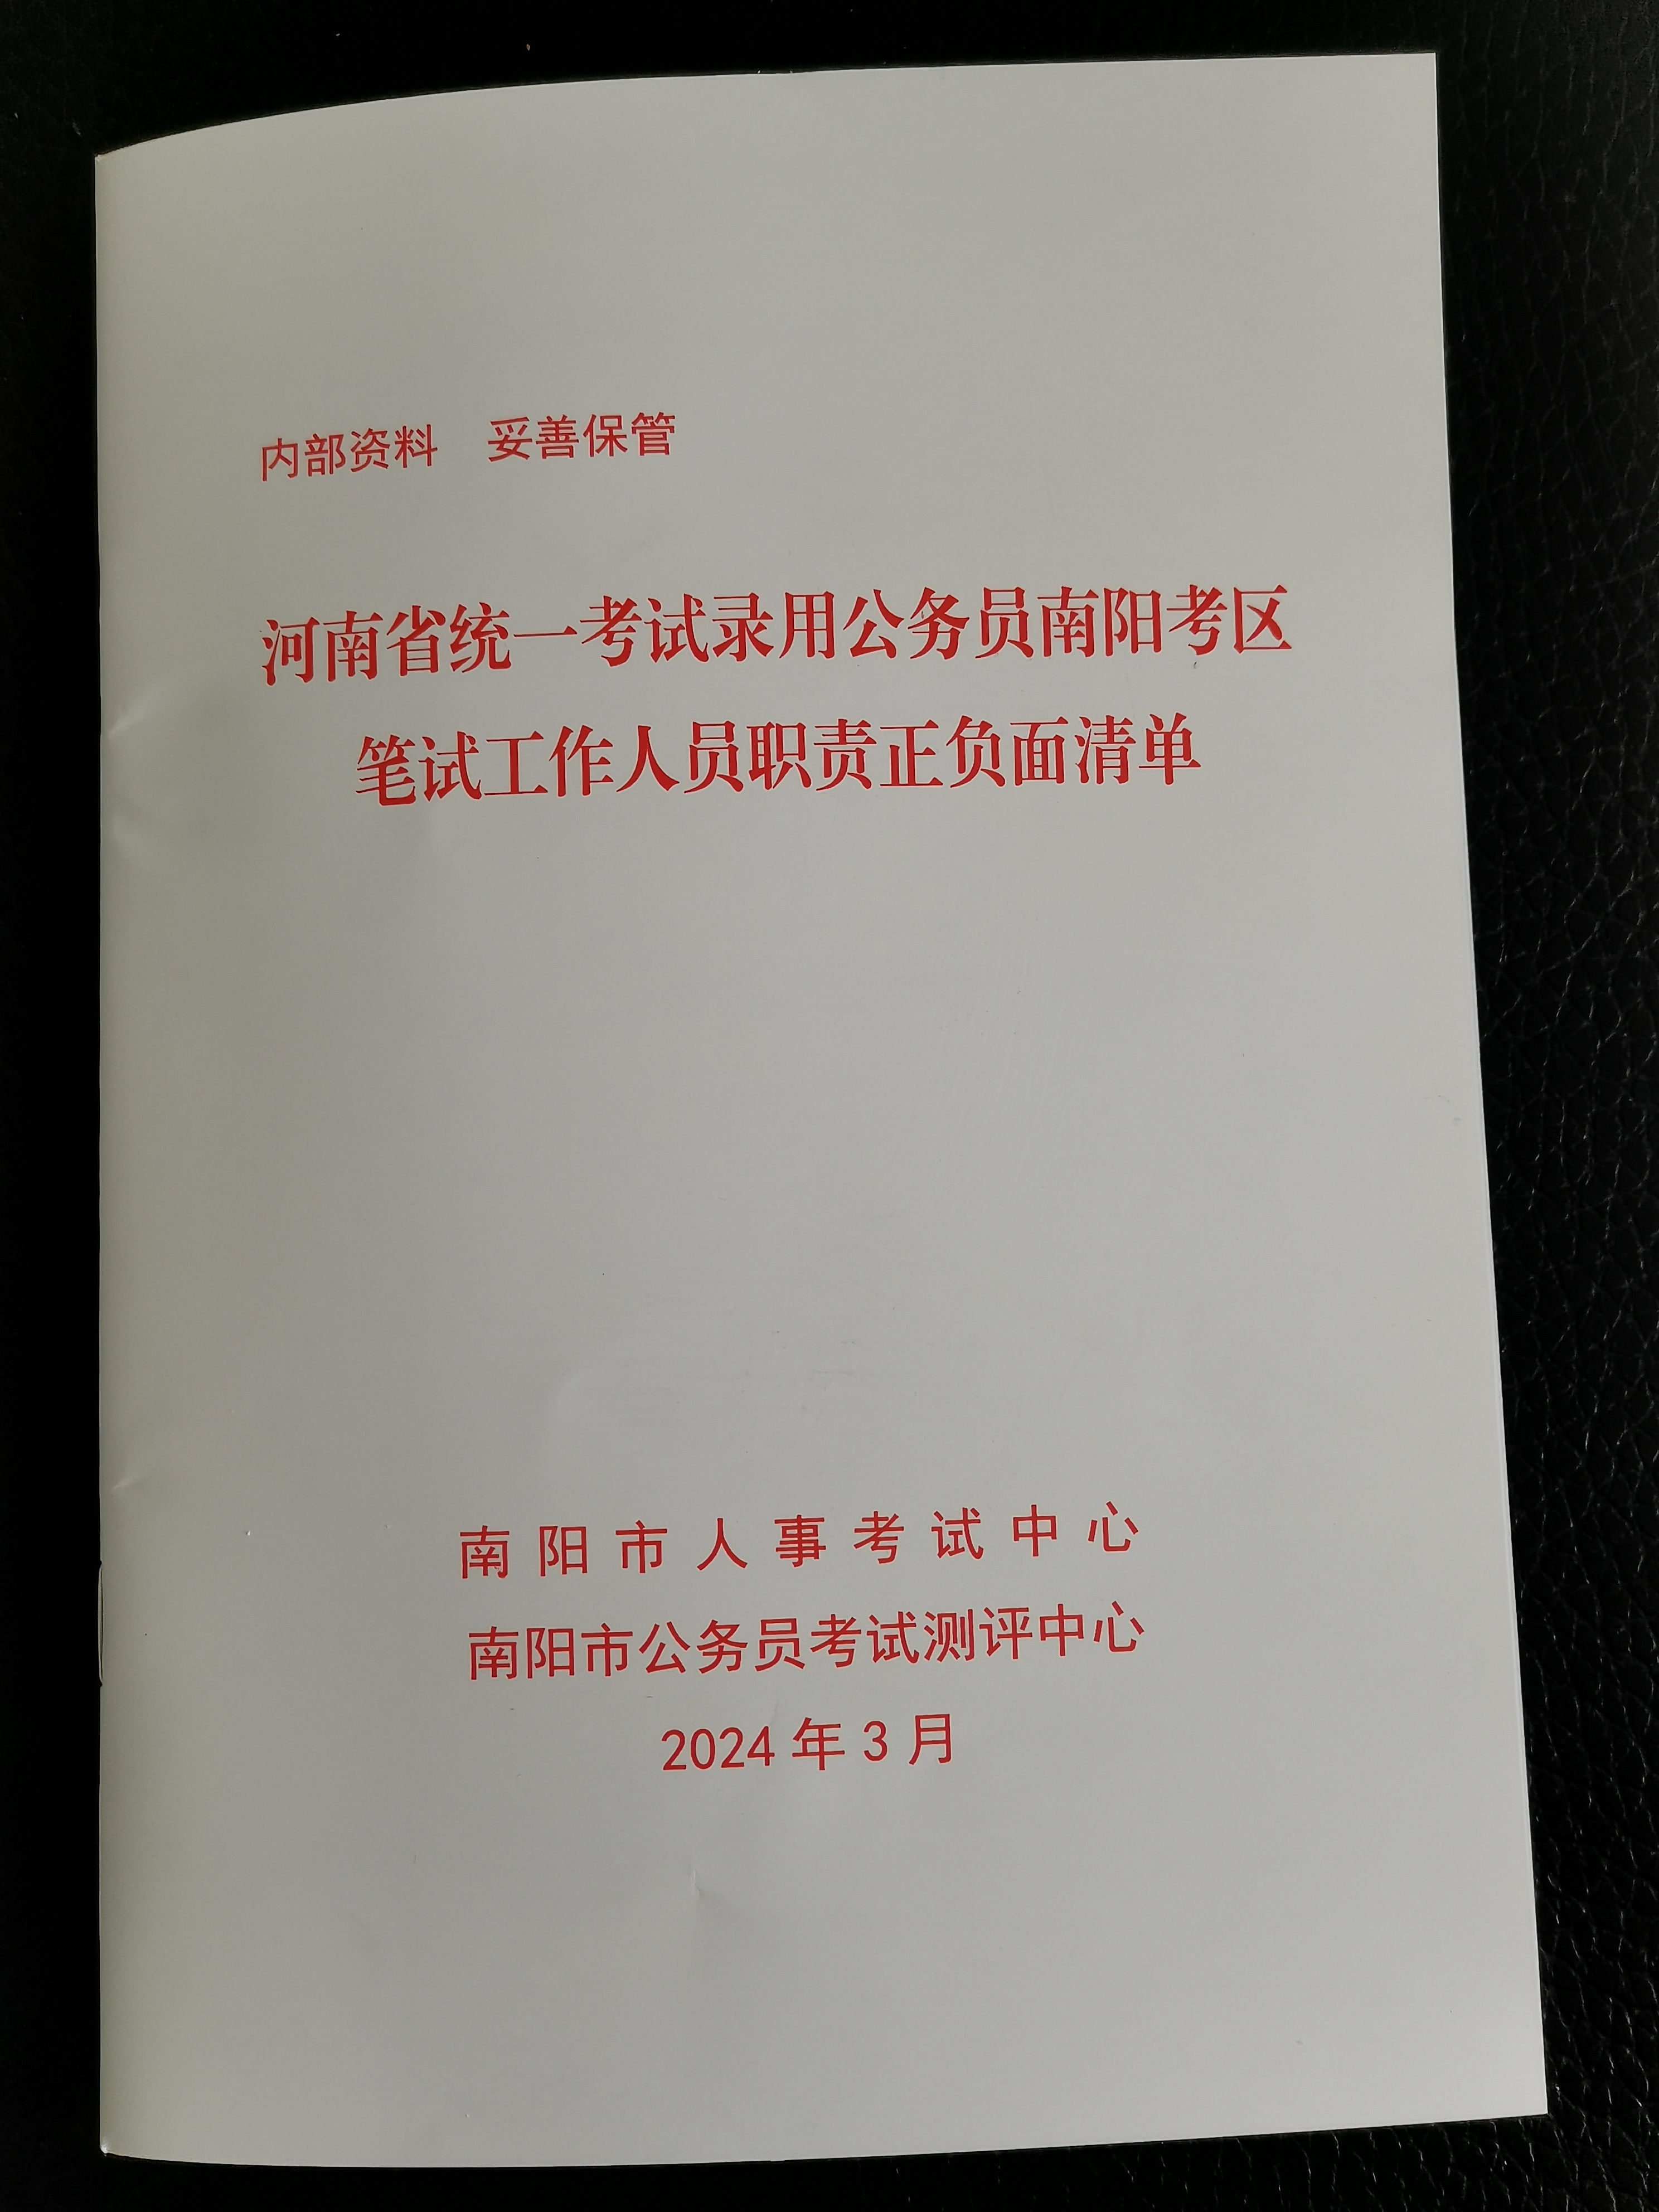 河南省2024年统一考试录用公务员南阳考区笔试工作顺利结束